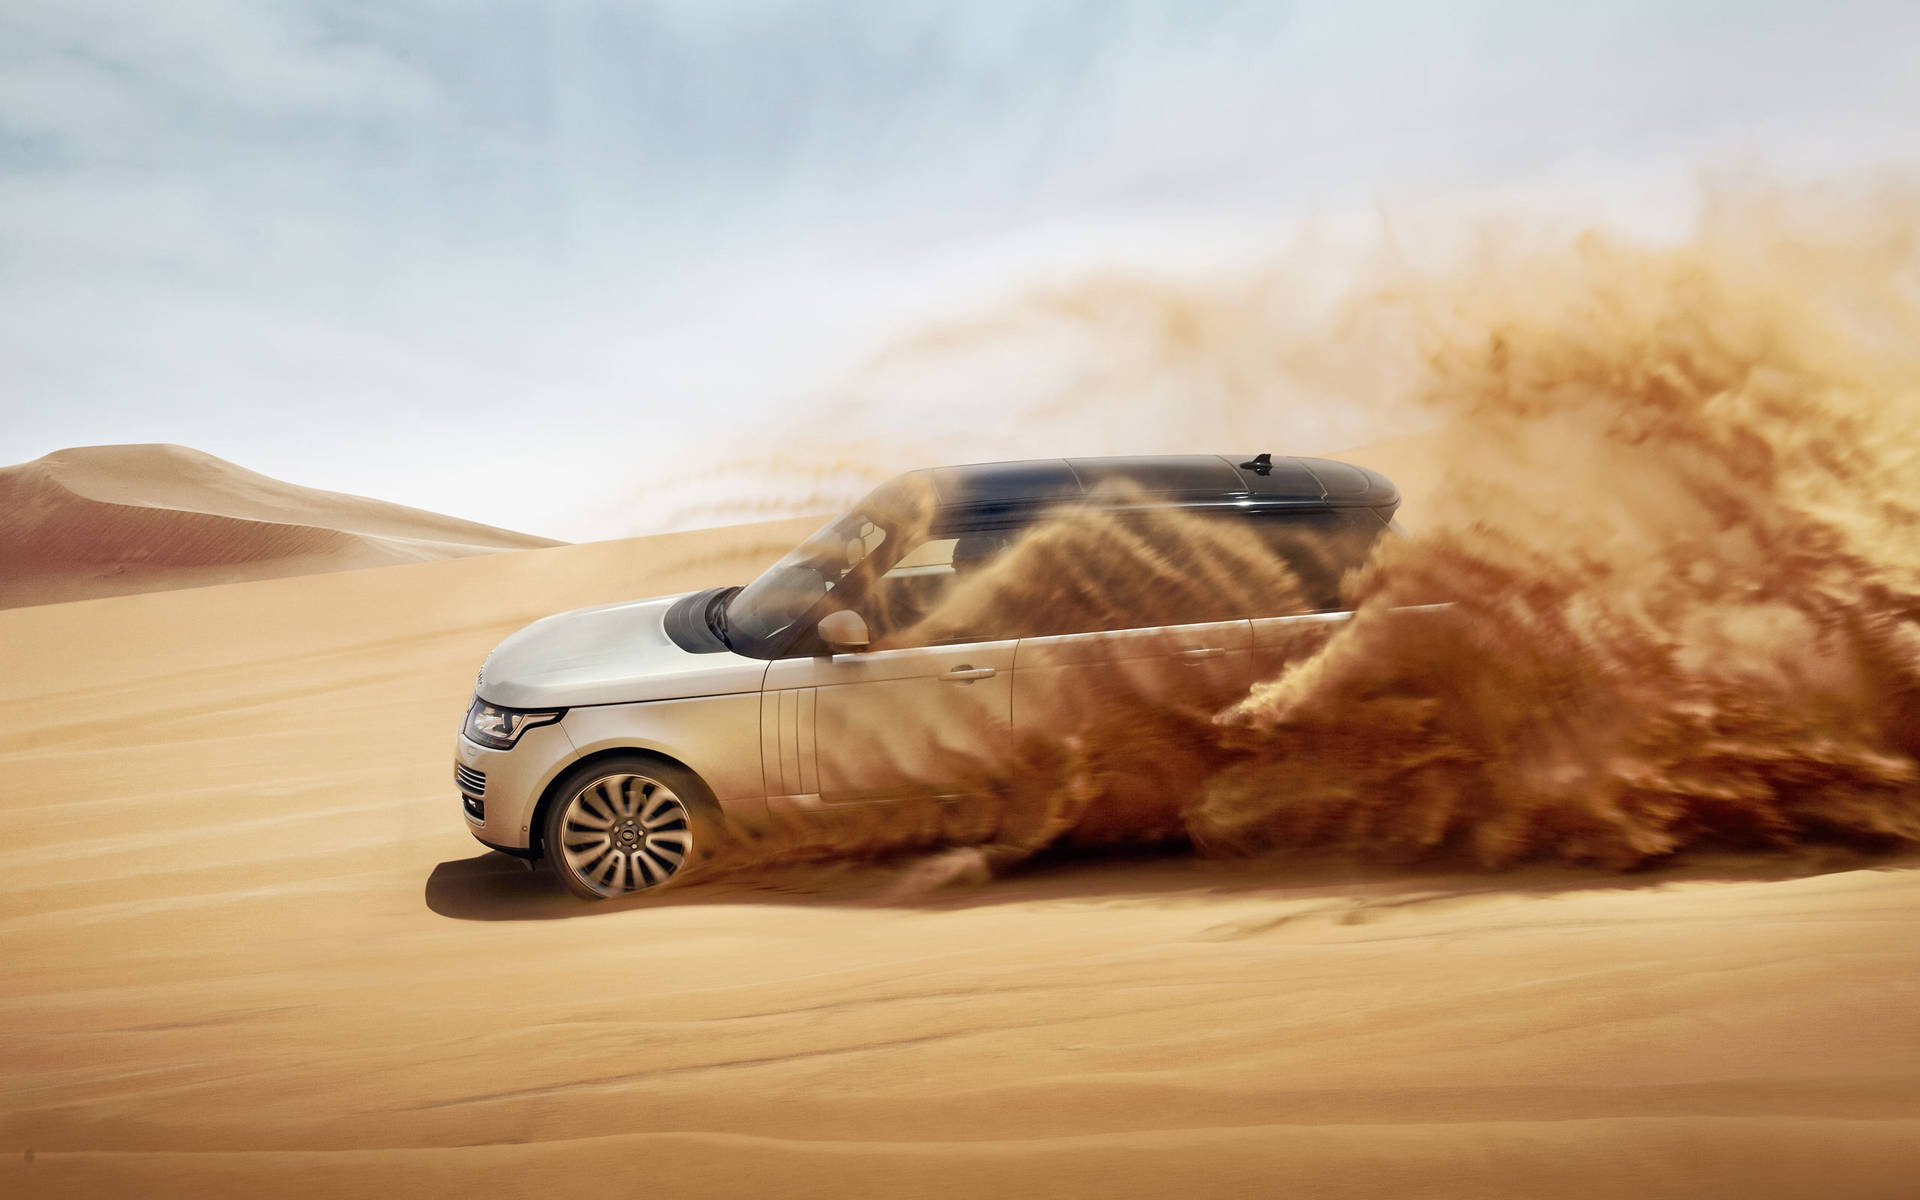 Silver Black Land Rover In Desert wallpaper